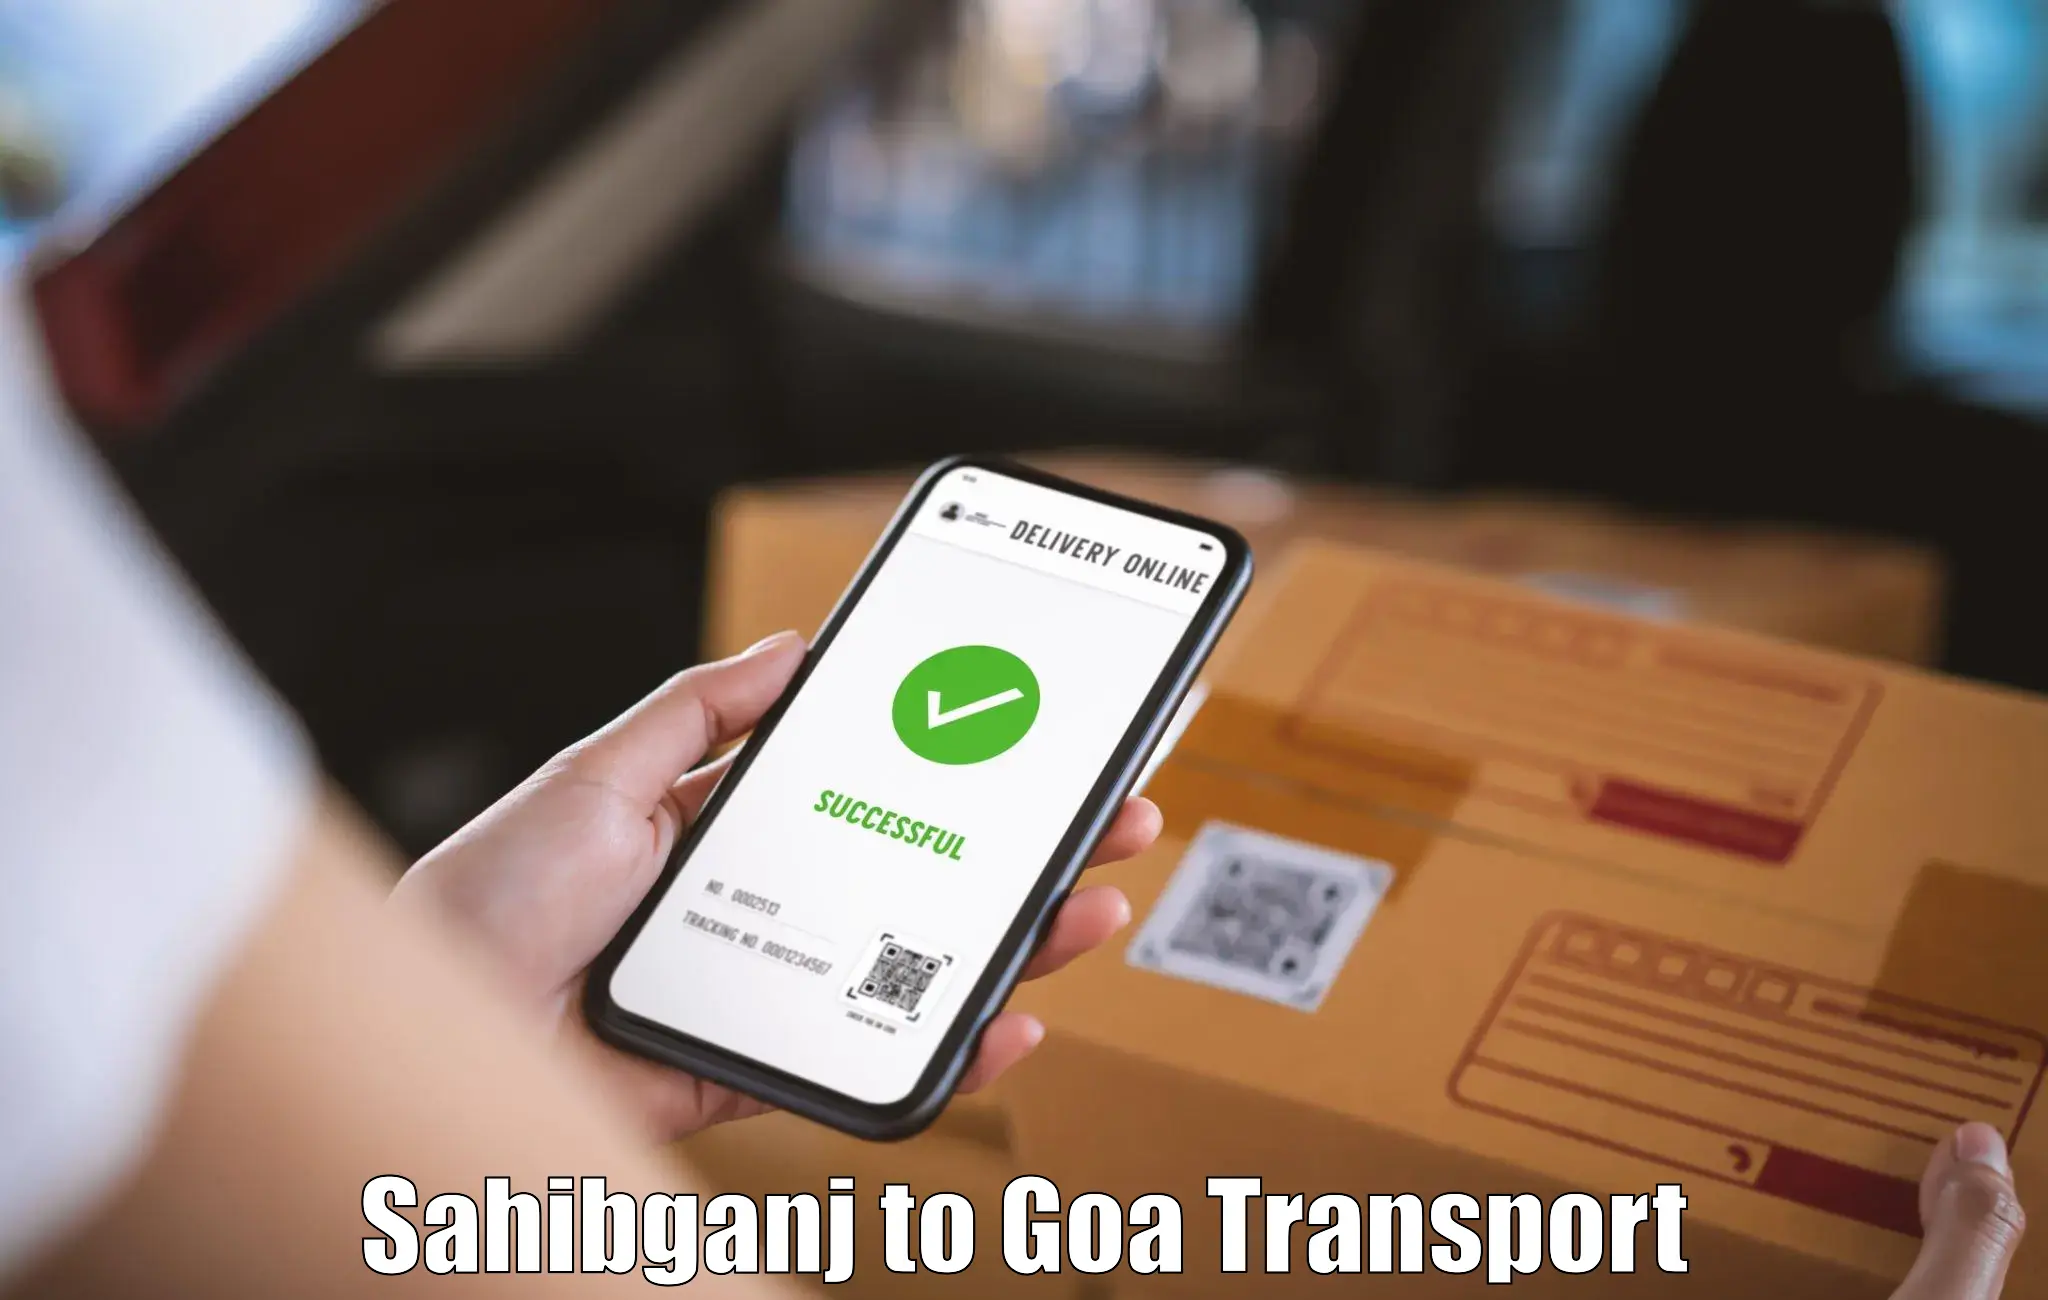 Transport in sharing in Sahibganj to Goa University